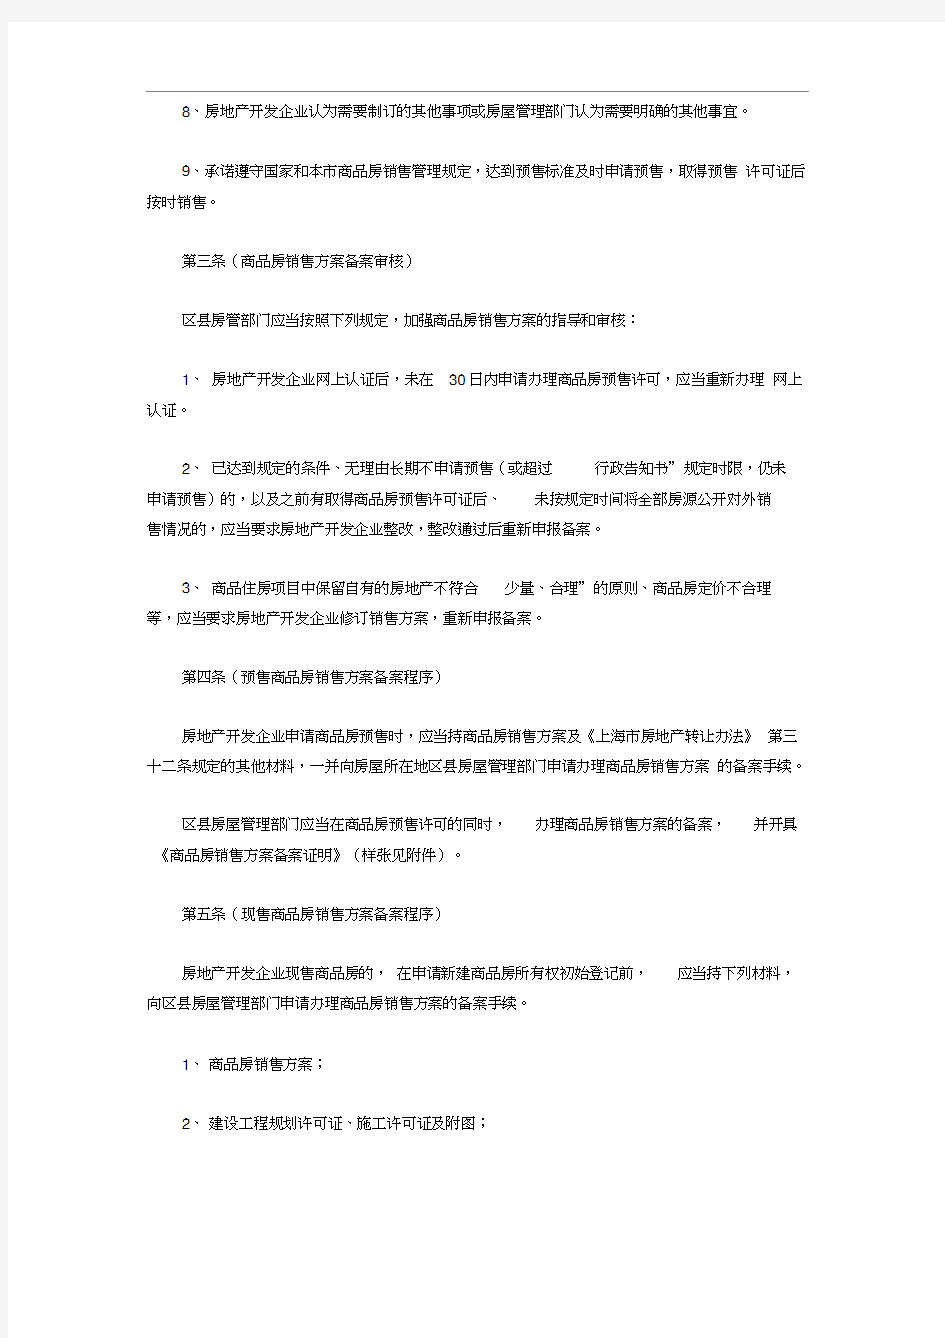 上海市商品房销售方案备案管理暂行规定